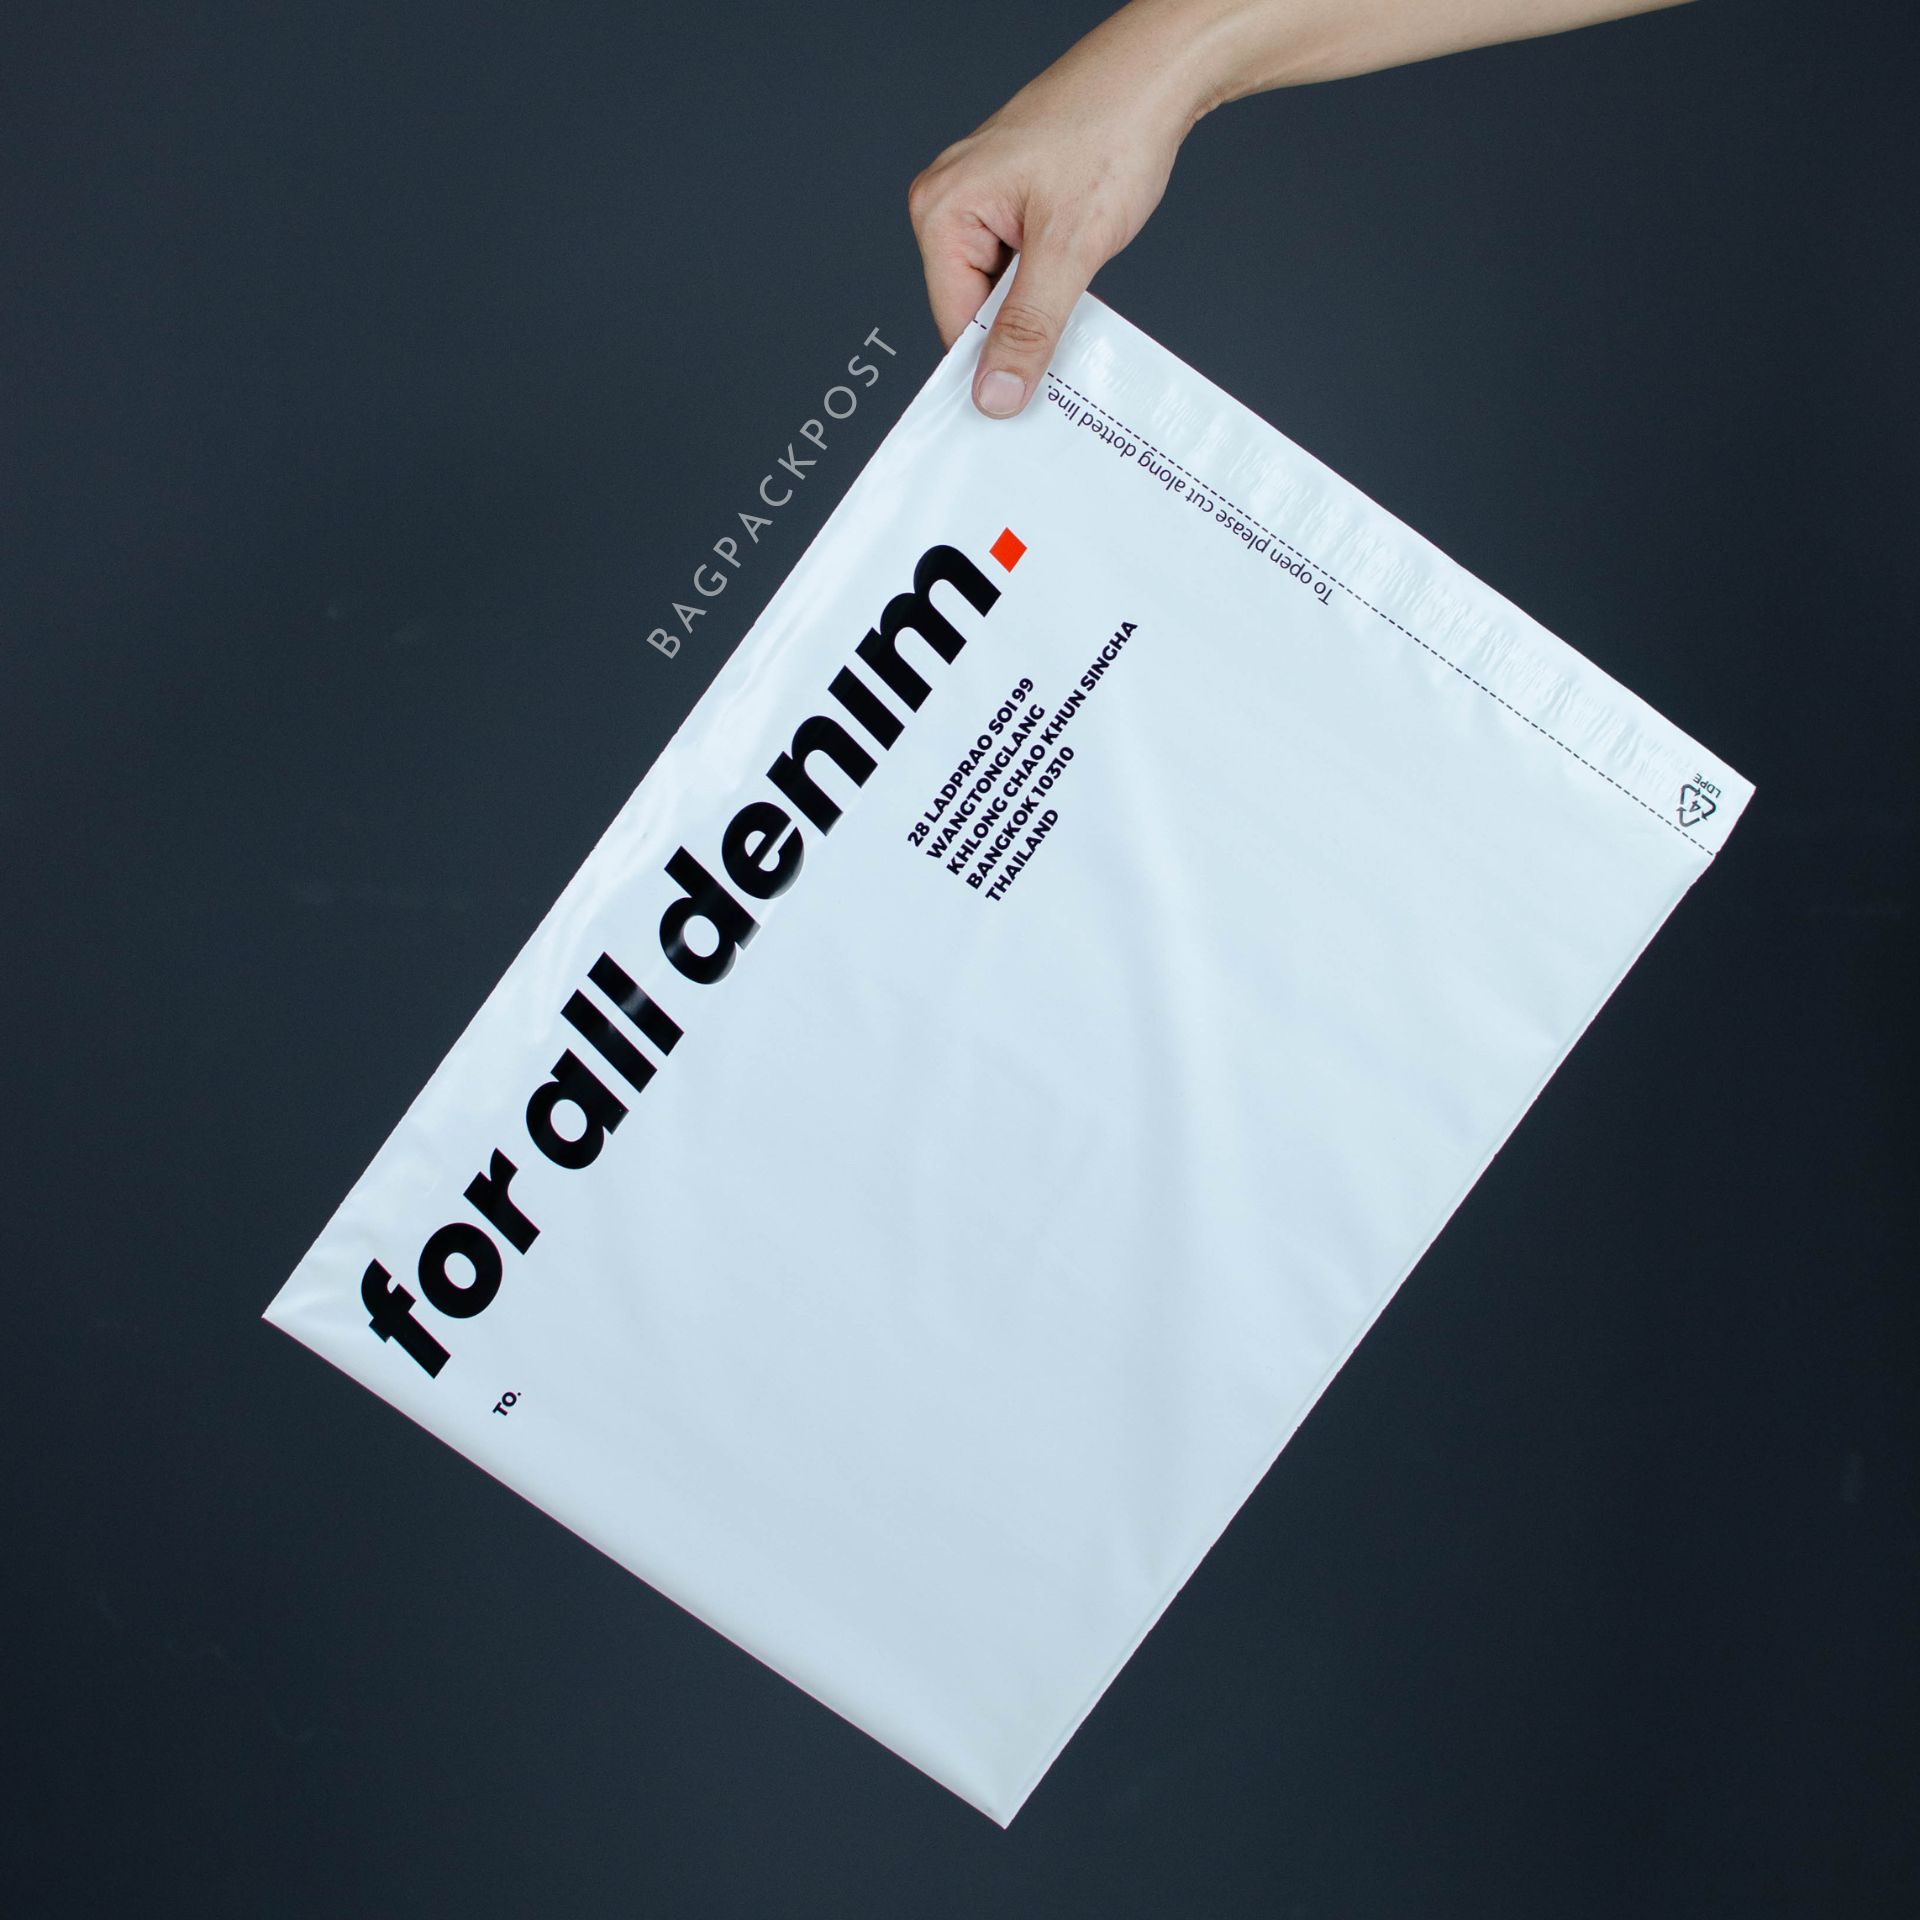 ผลิตถุงไปรษณีย์ ถุงพัสดุ ซองไปรษณีย์พิมพ์ลาย For All Denim ซองไปรษณีย์สีขาว ถุงไปรษณีย์พิมพ์ลาย 4 BagPackPost